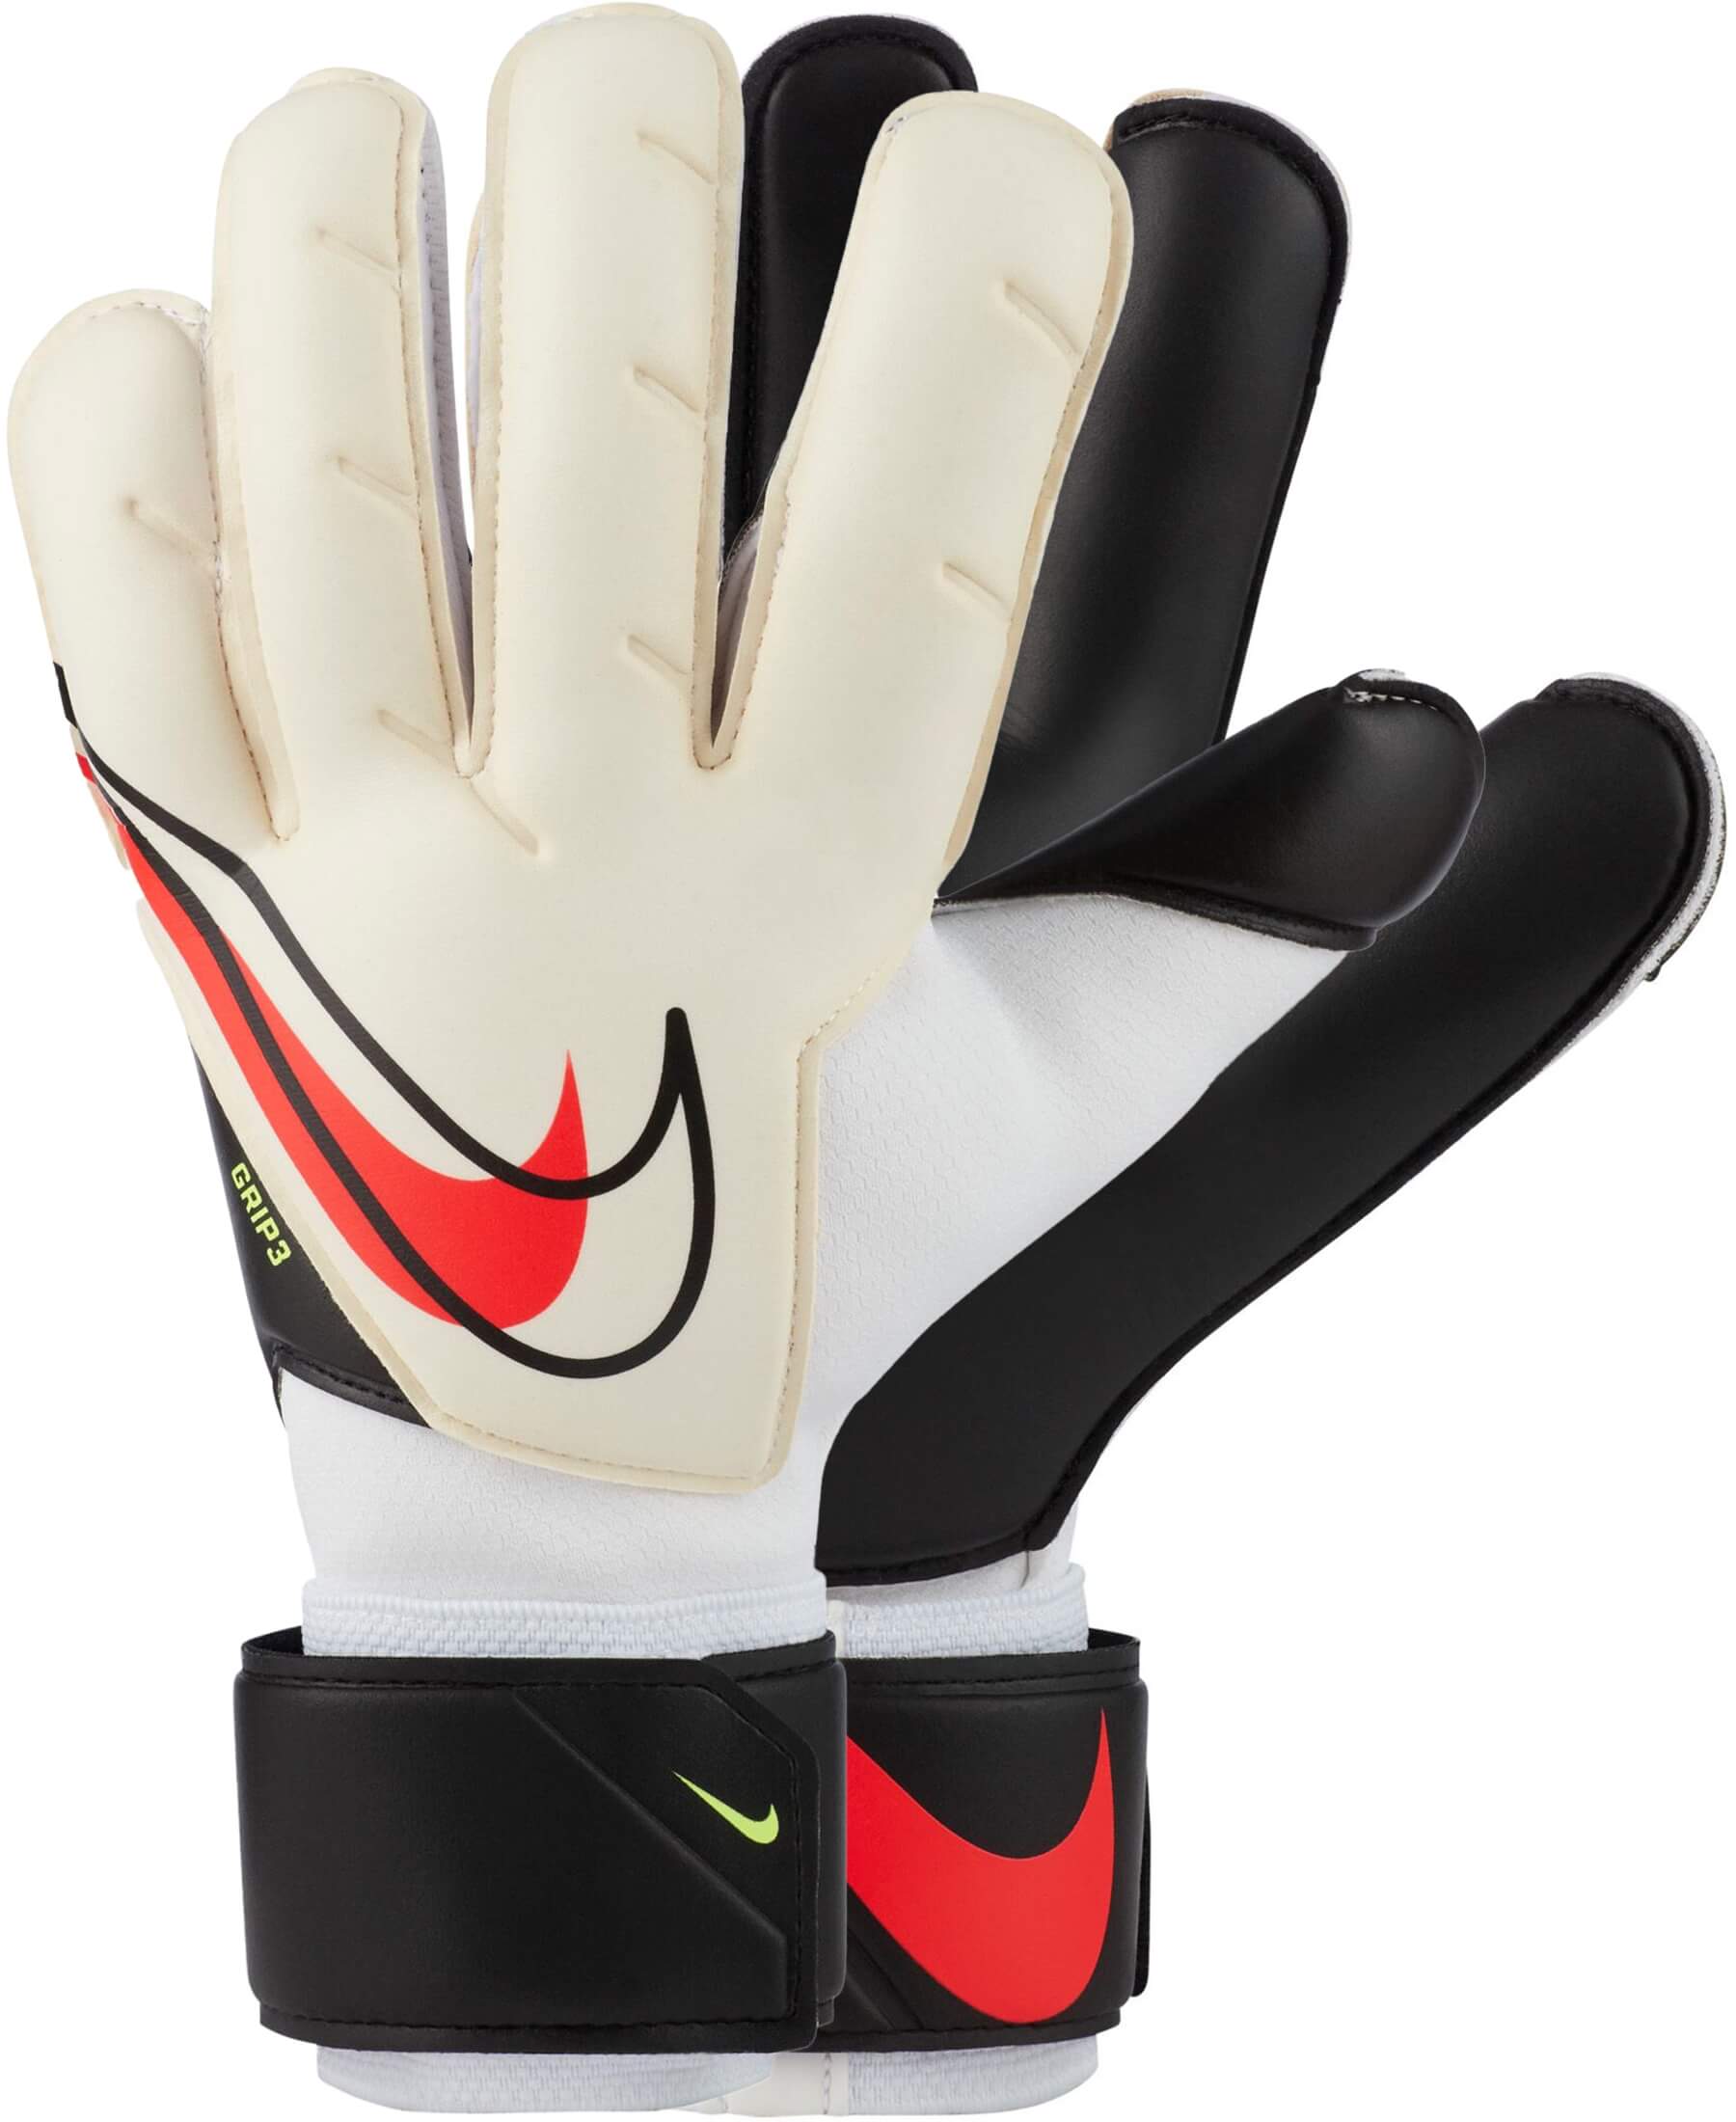 Die originalen Nike Torwarthandschuhe GK Grip3 sind speziell für fortgeschrittene Torhüter entwickelt worden. Sie verfügen über die GRIP3-Technologie, die einen sicheren Halt und eine präzise Ballkontrolle ermöglicht. Der atmungsaktive Netzstoff sorgt für eine kühle Luftzirkulation zwischen den Fingern. Die Farbkombination der Handschuhe ist White/Black/Bright Crimson. Zusätzlich besitzen die Handschuhe einen Handgelenkriemen mit Klettverschluss für eine sichere Fixierung und individuelle Anpassung.